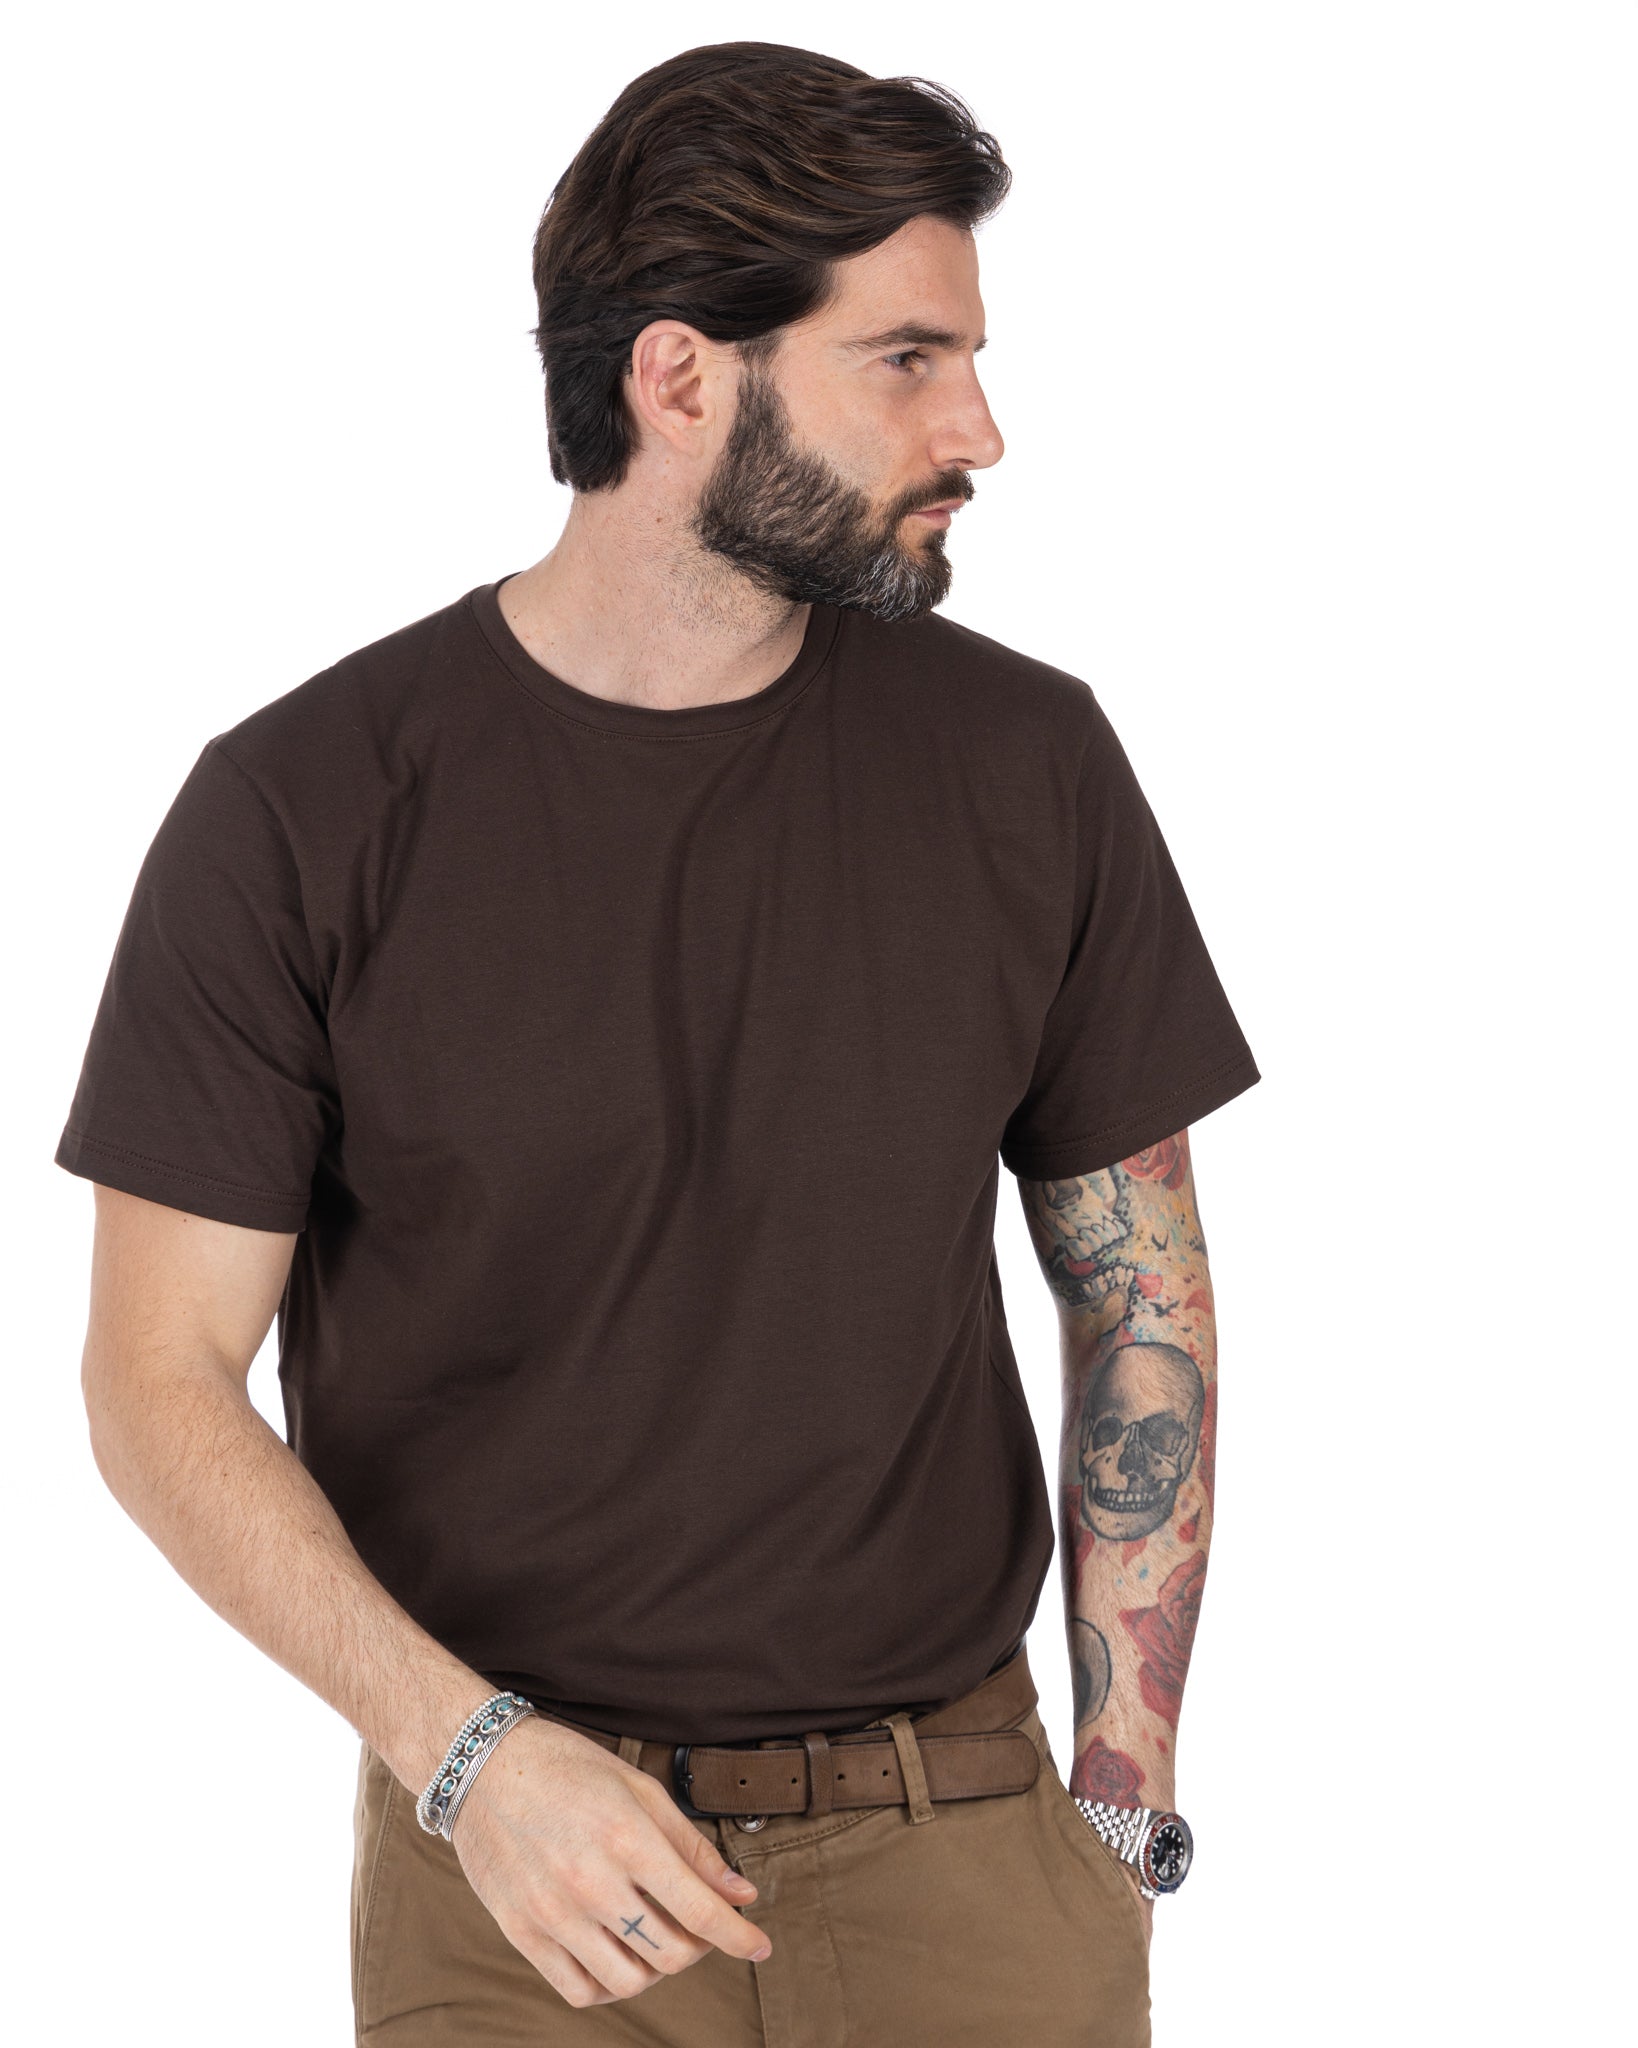 Harry - dark brown stretch cotton t-shirt